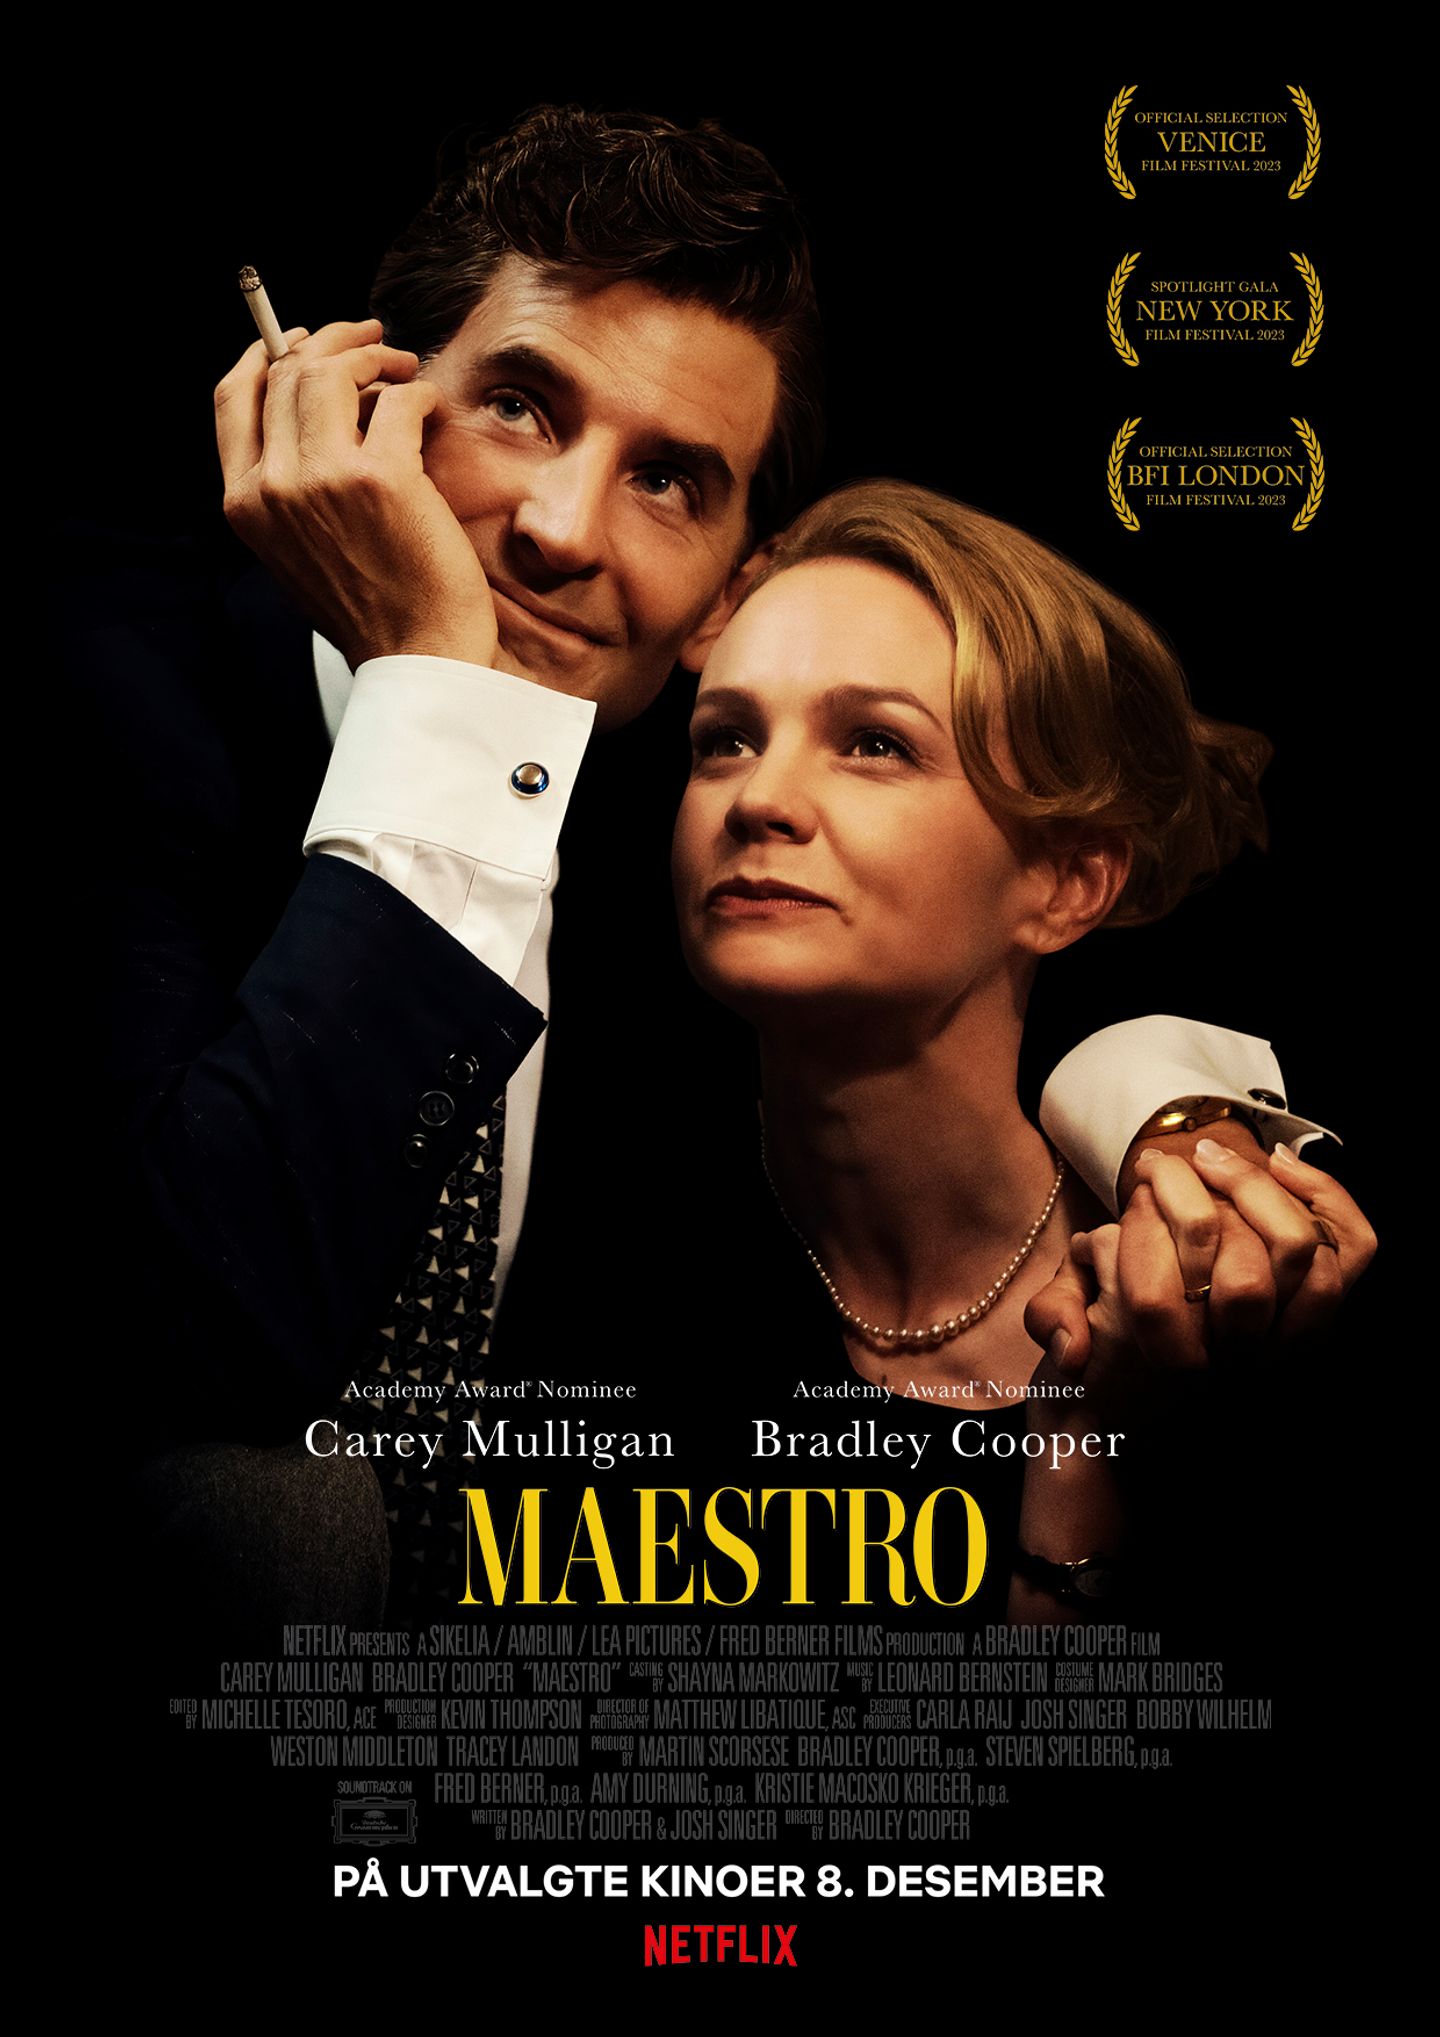 Plakat for 'Maestro'